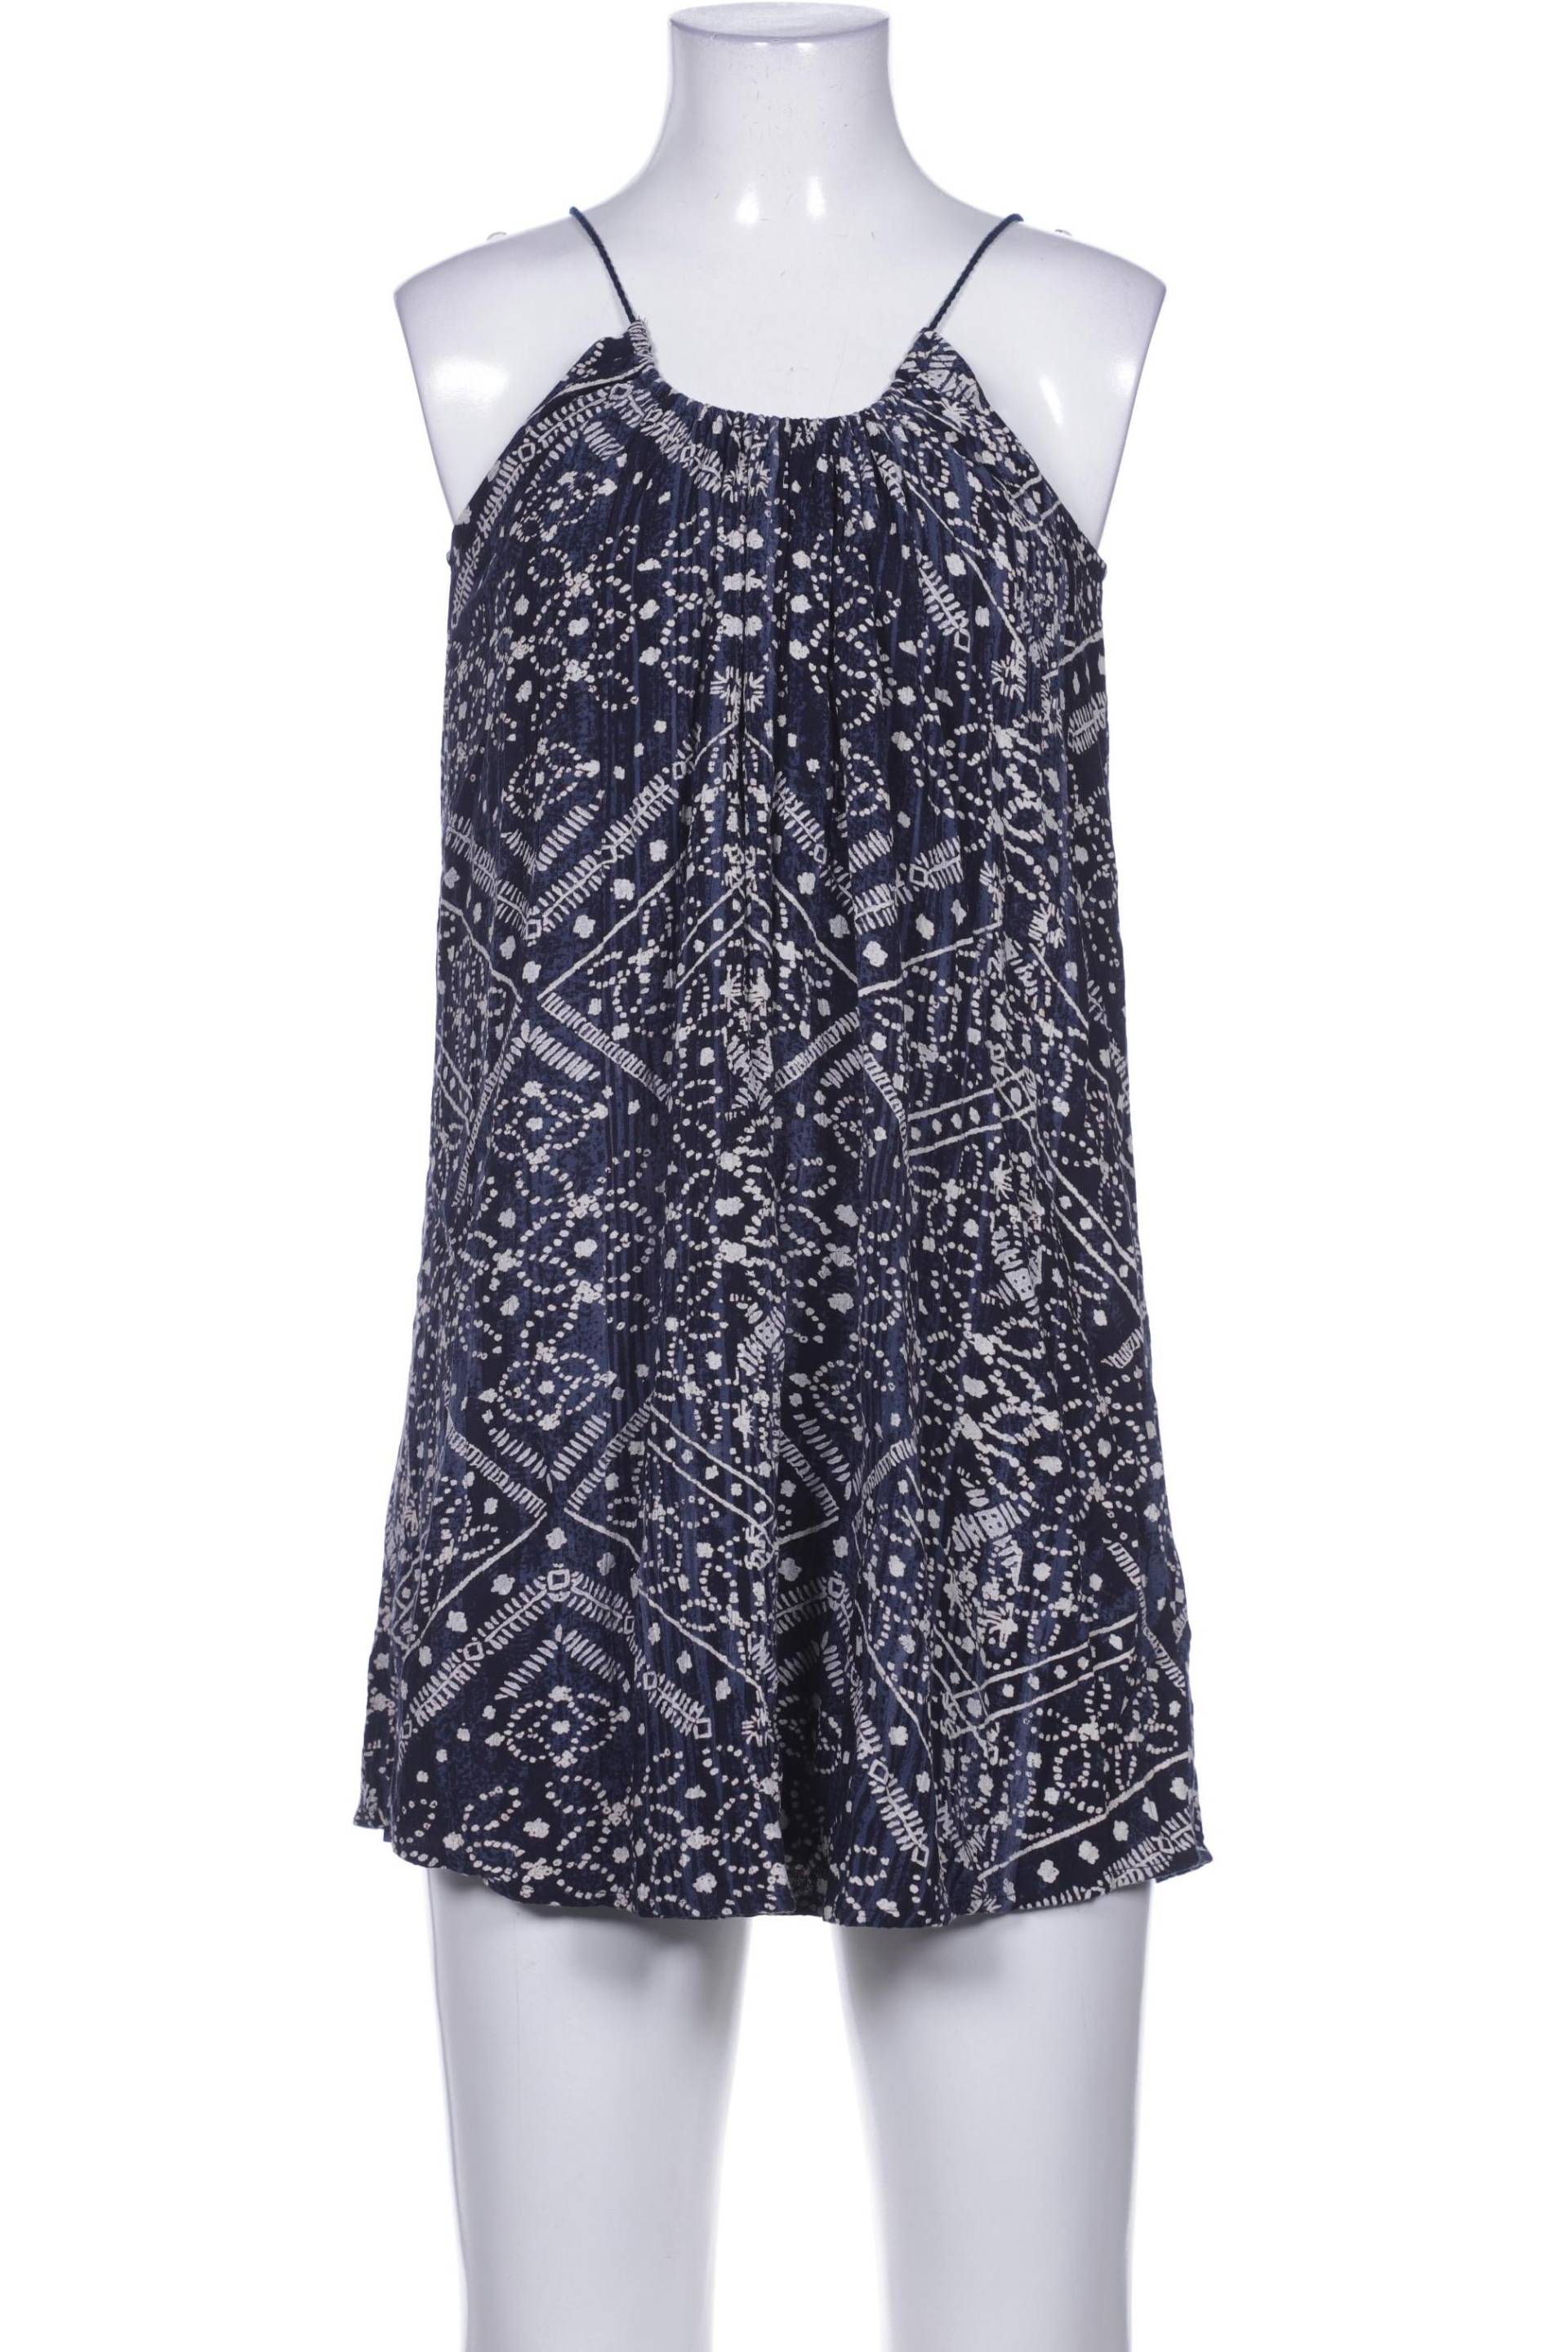 Abercrombie & Fitch Damen Kleid, marineblau von Abercrombie & Fitch